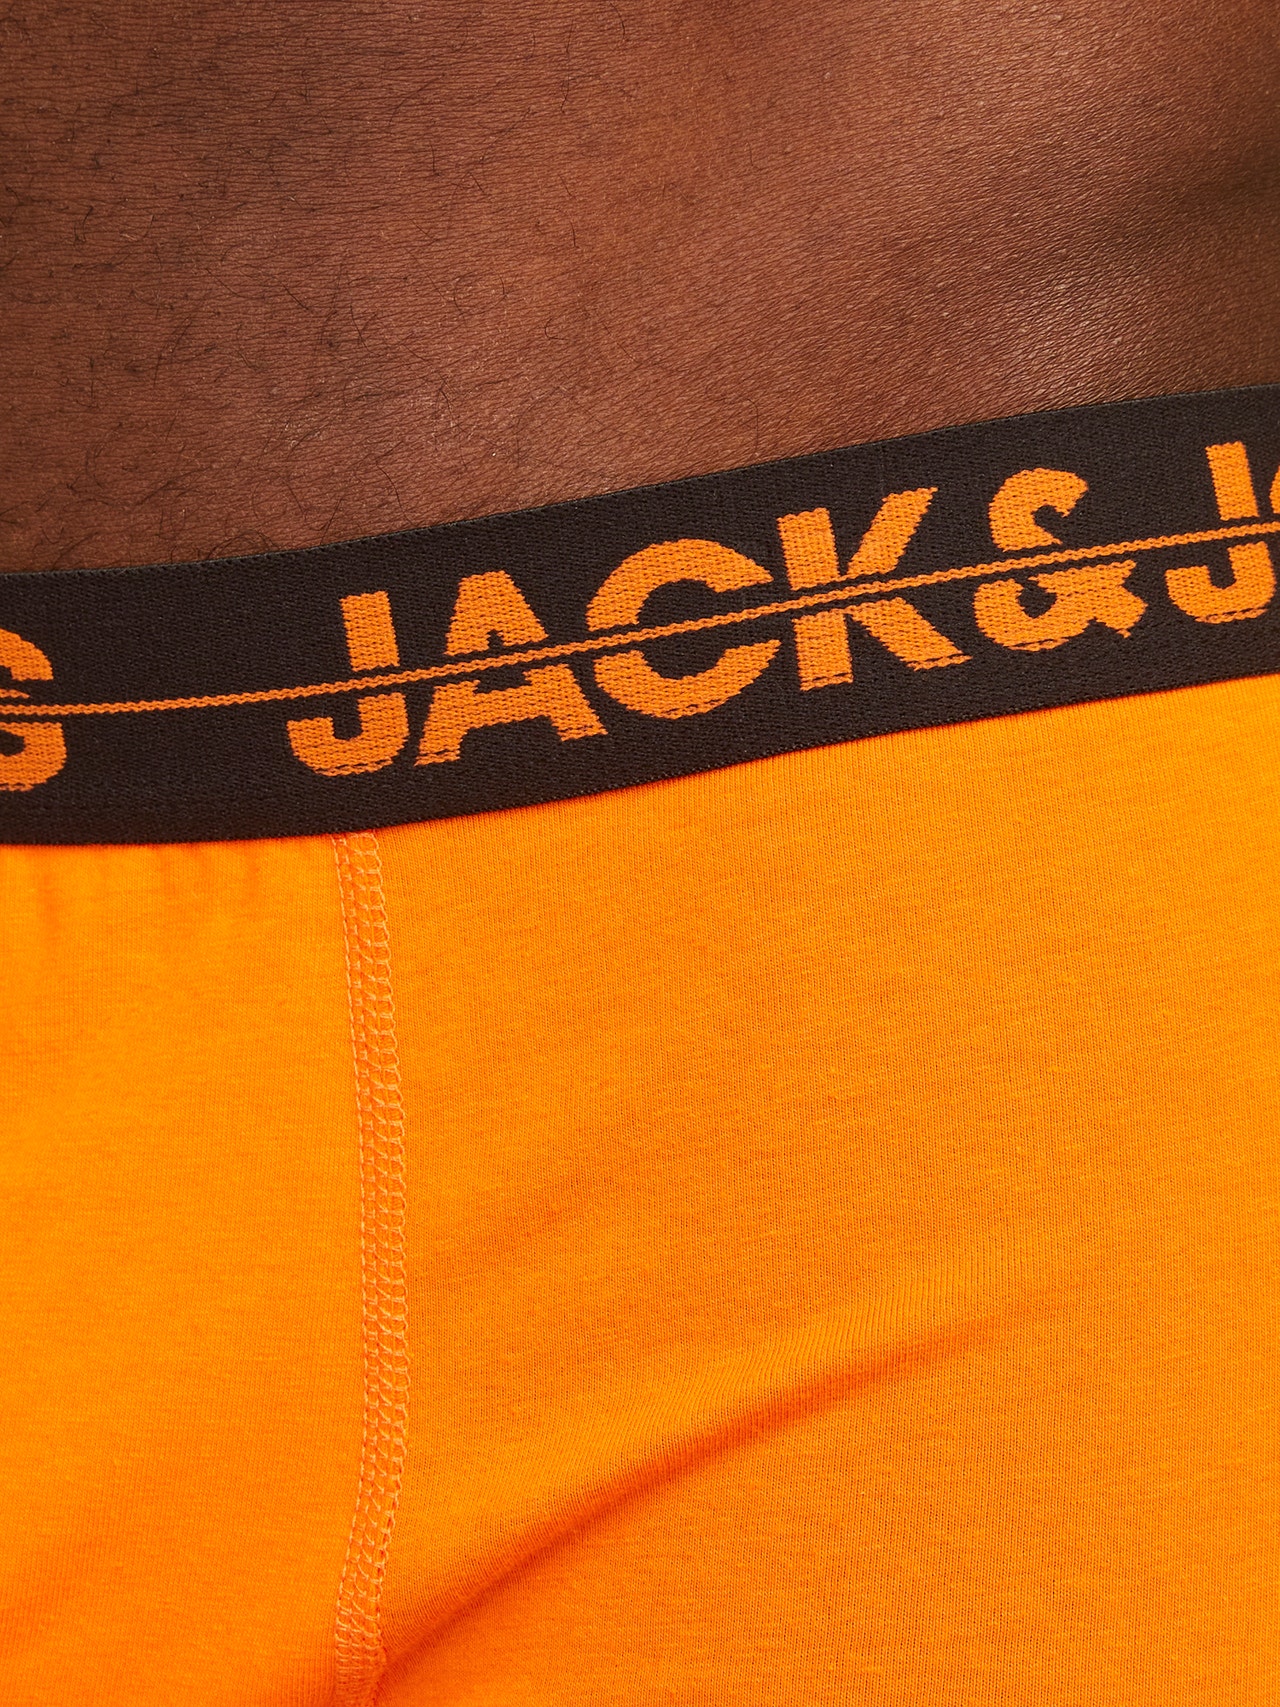 Jack & Jones 5er-pack Boxershorts -Victoria Blue - 12251418